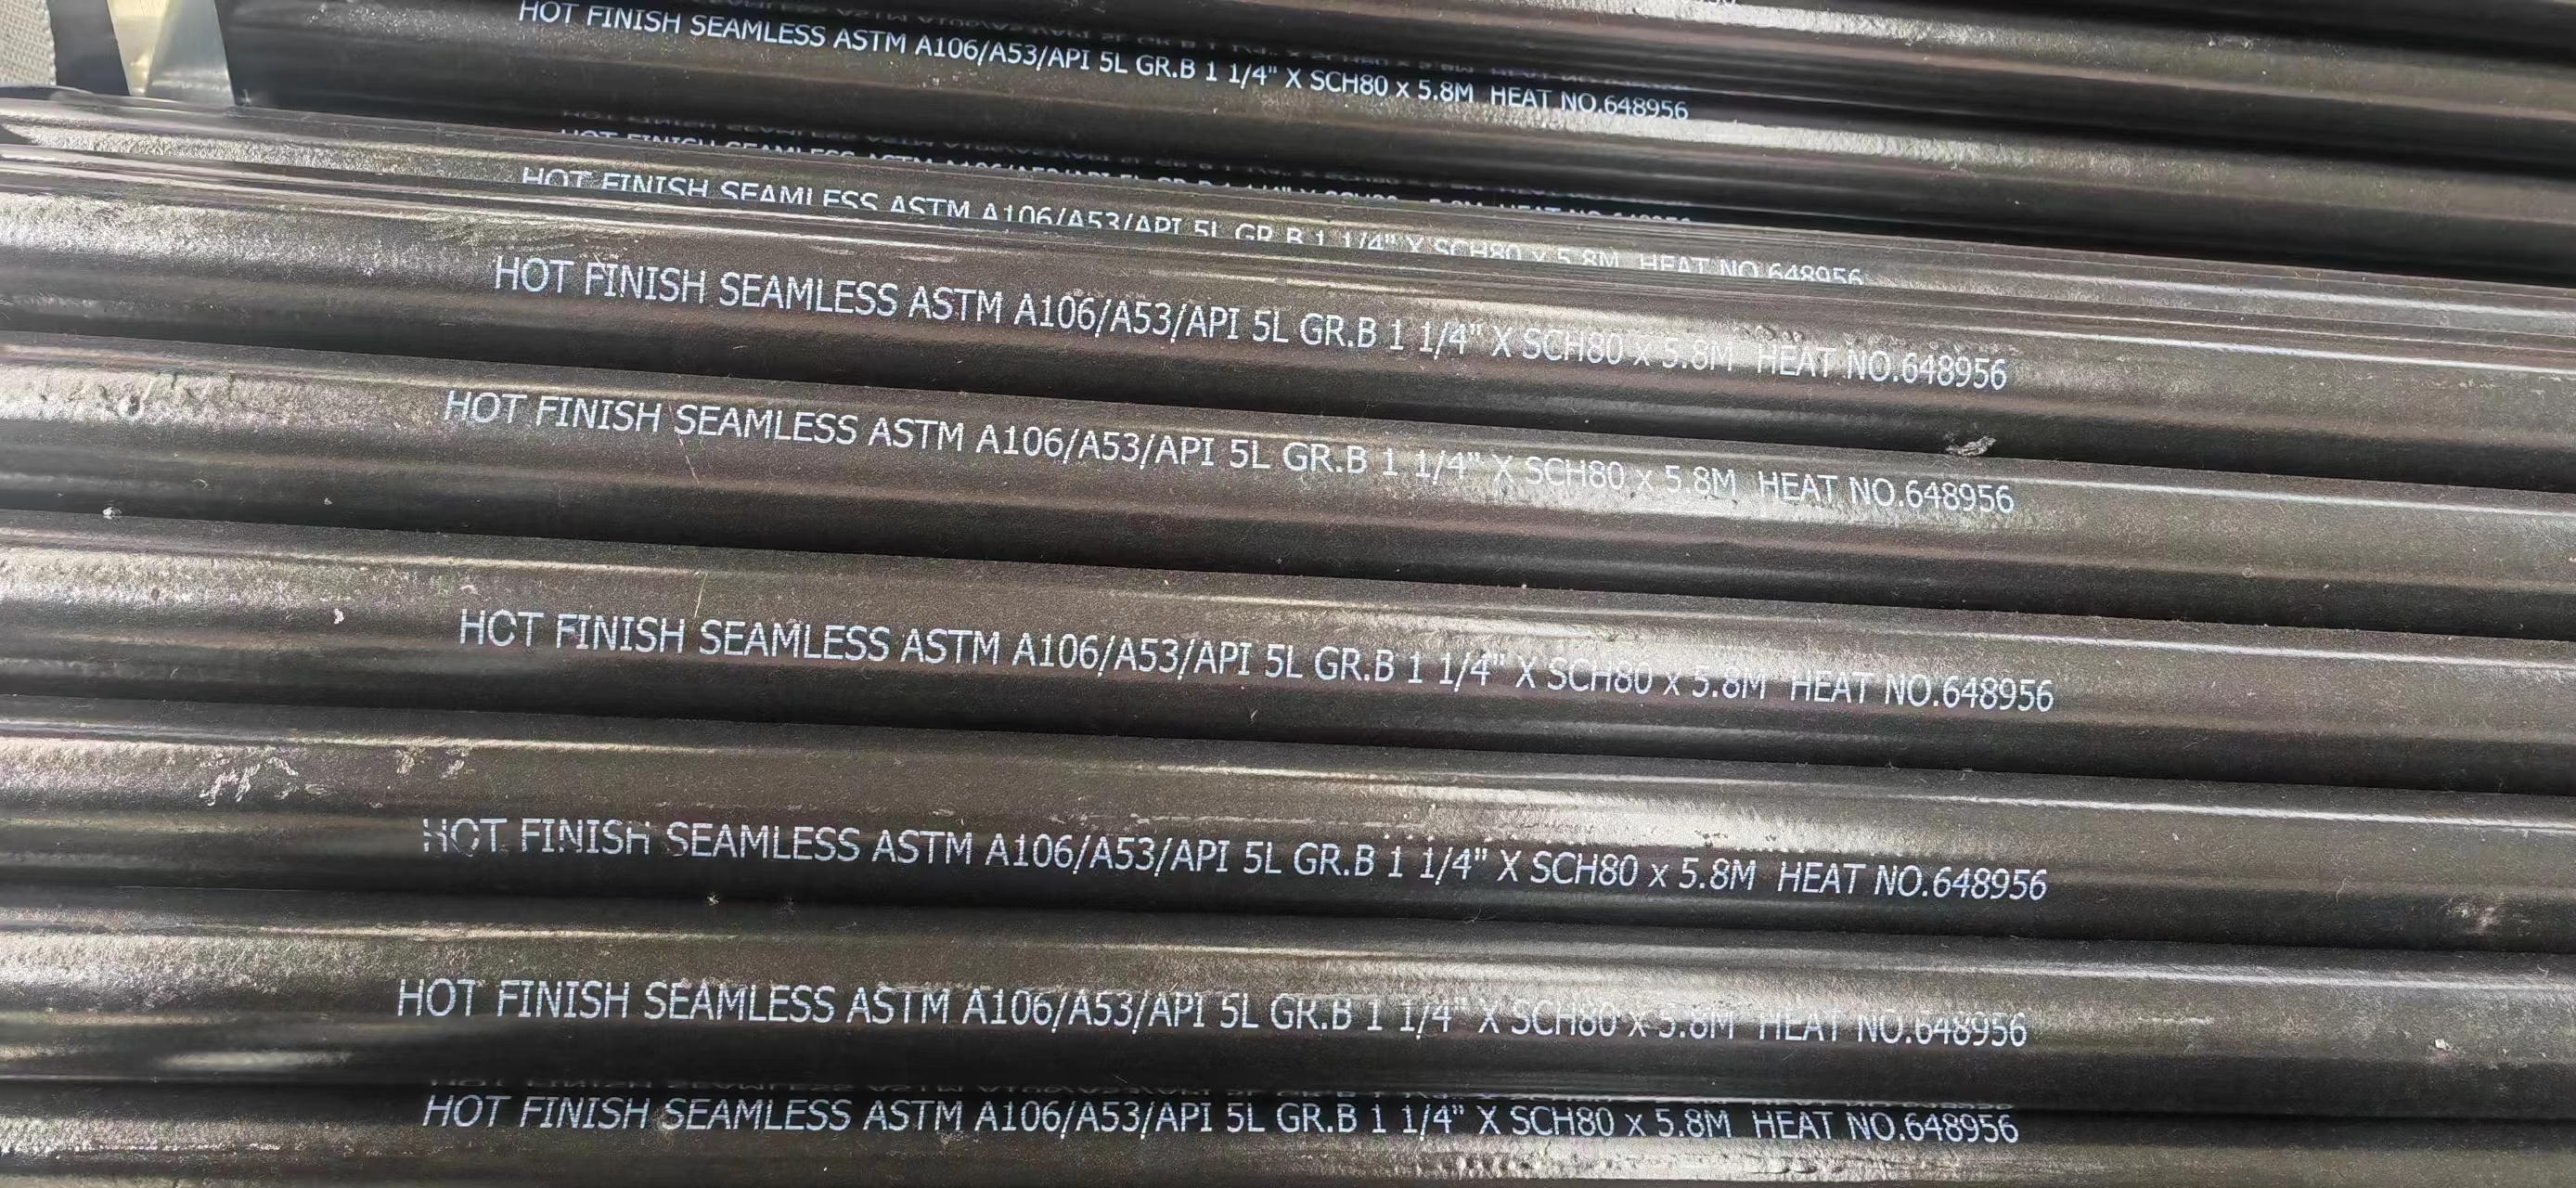 Seamless steel pipe na karaniwang ginagamit na materyal na ASTM A106